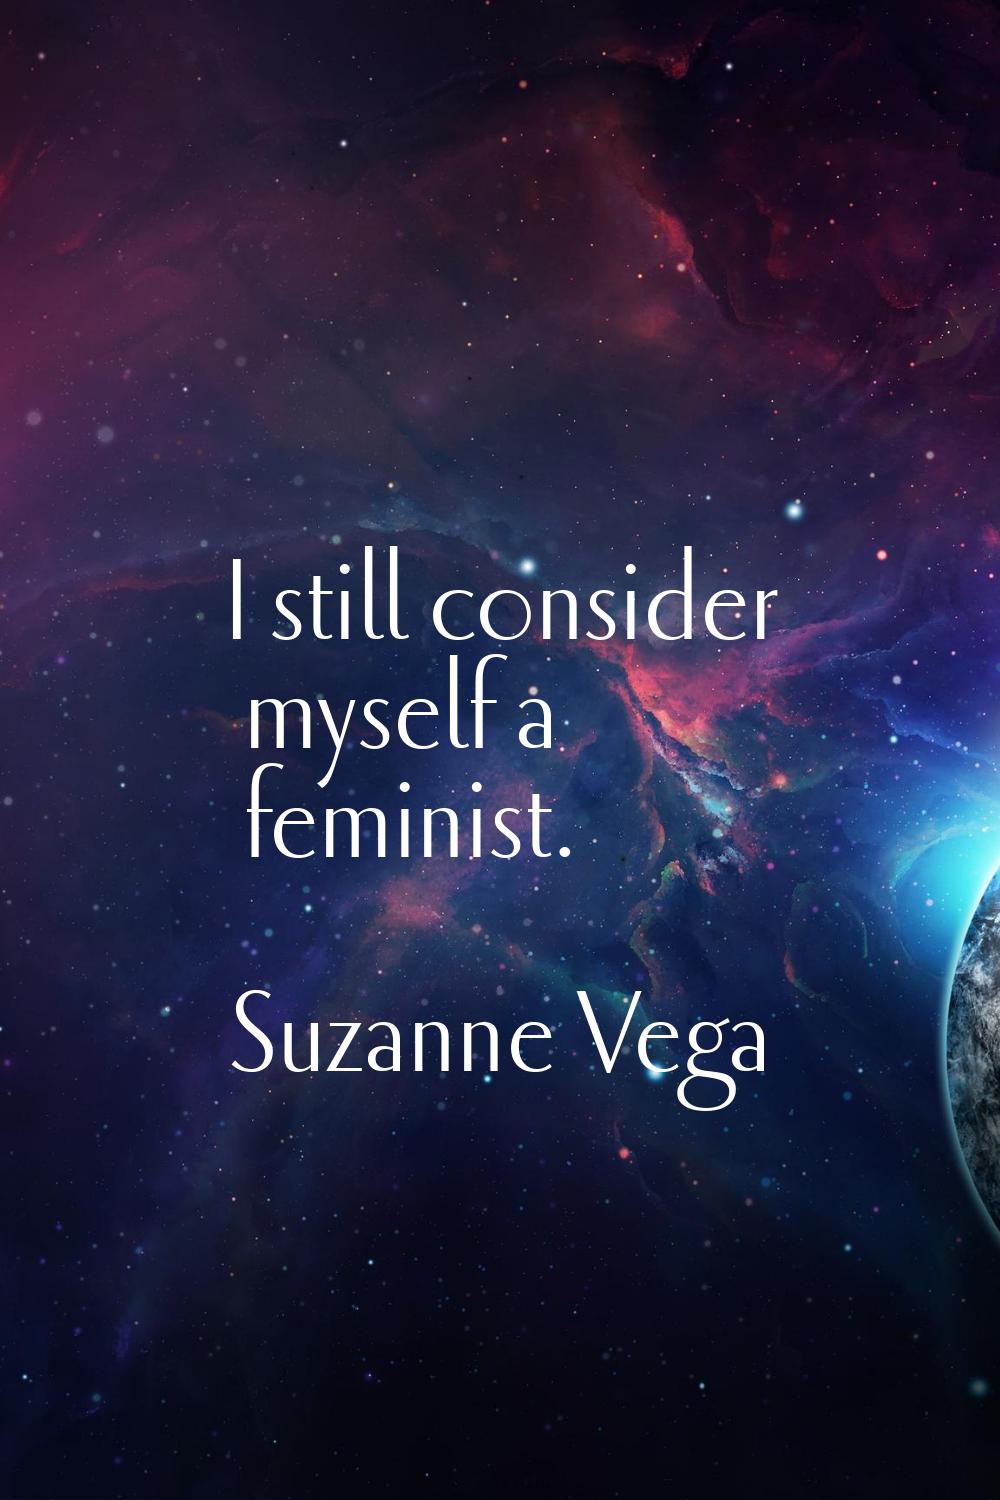 I still consider myself a feminist.